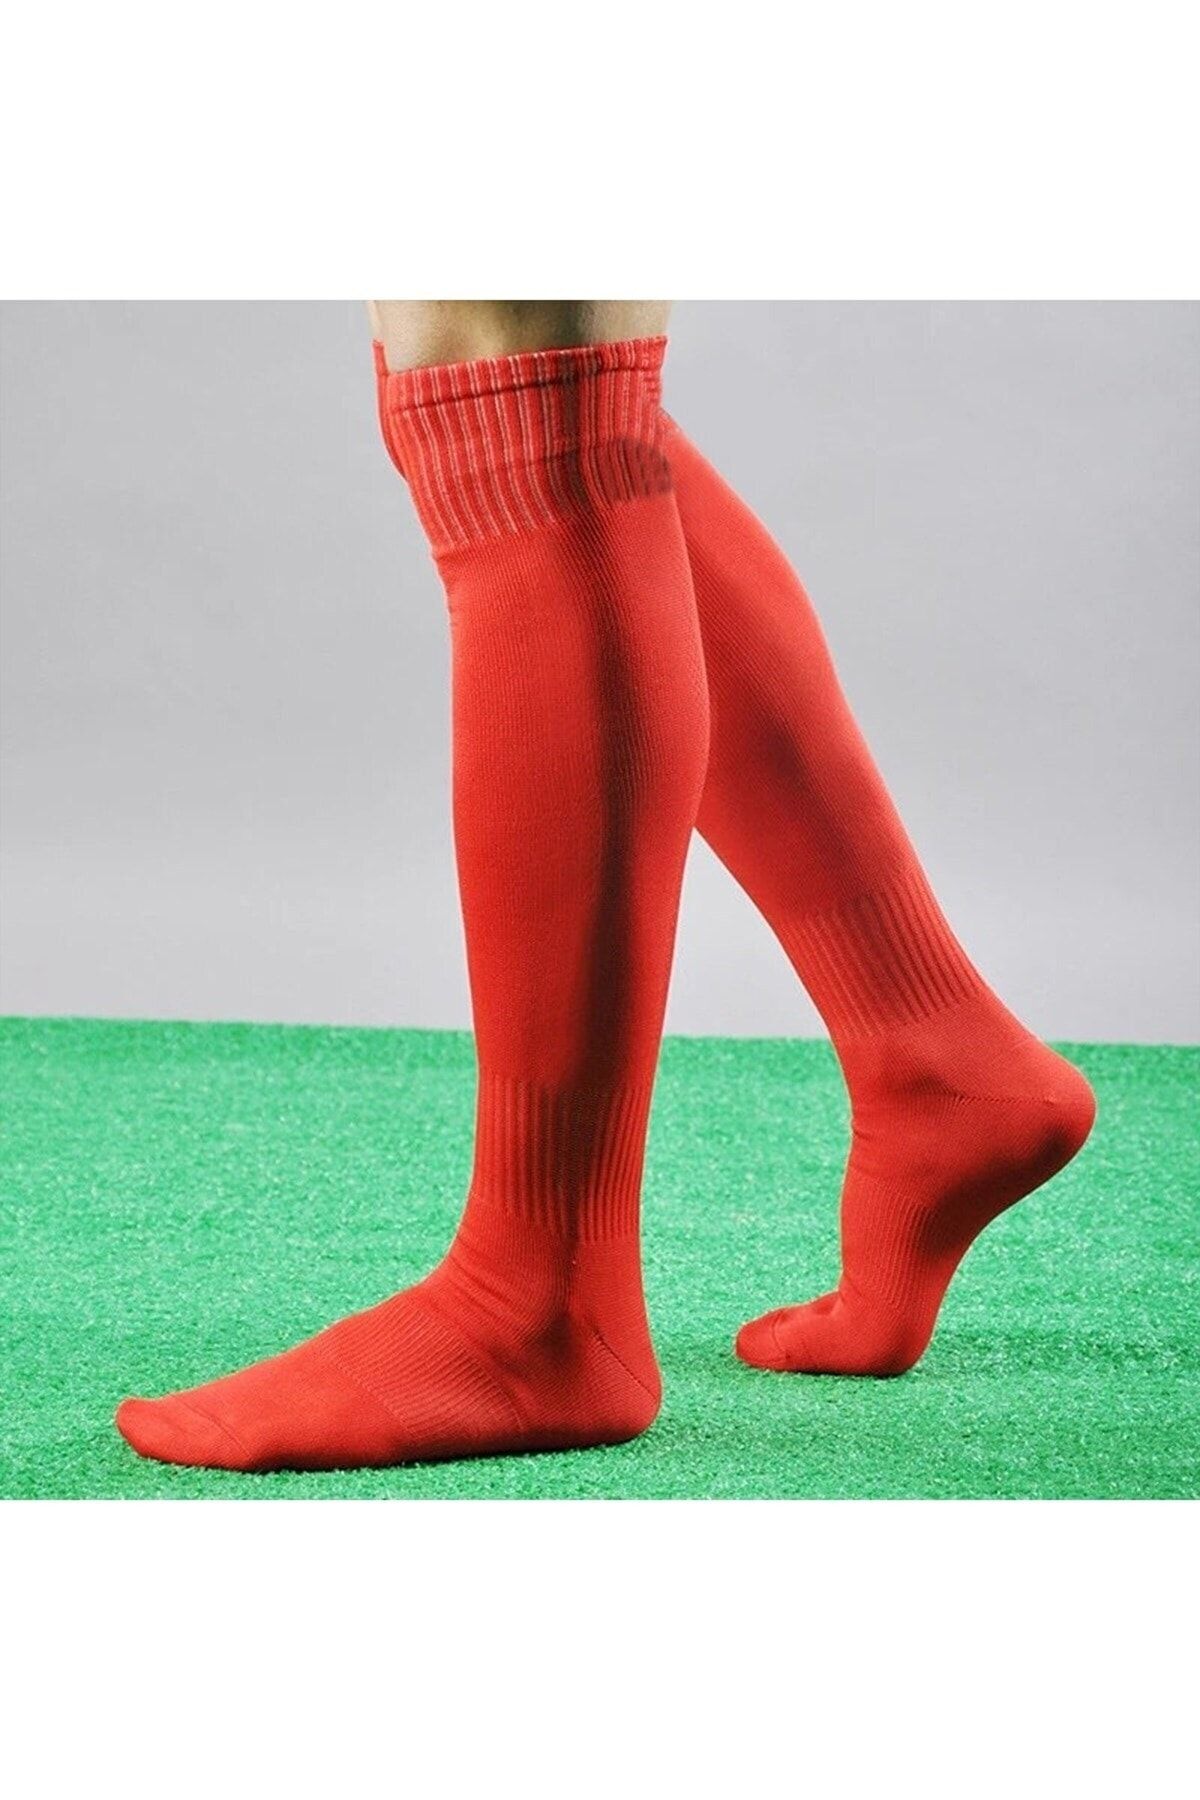 Genel Markalar Çift Cırtlı 2 Adet Futbol Tekmeliği + 2 Adet Futbolcu Tozluk Futbol Maç Set Çorap Ve Tekmelik